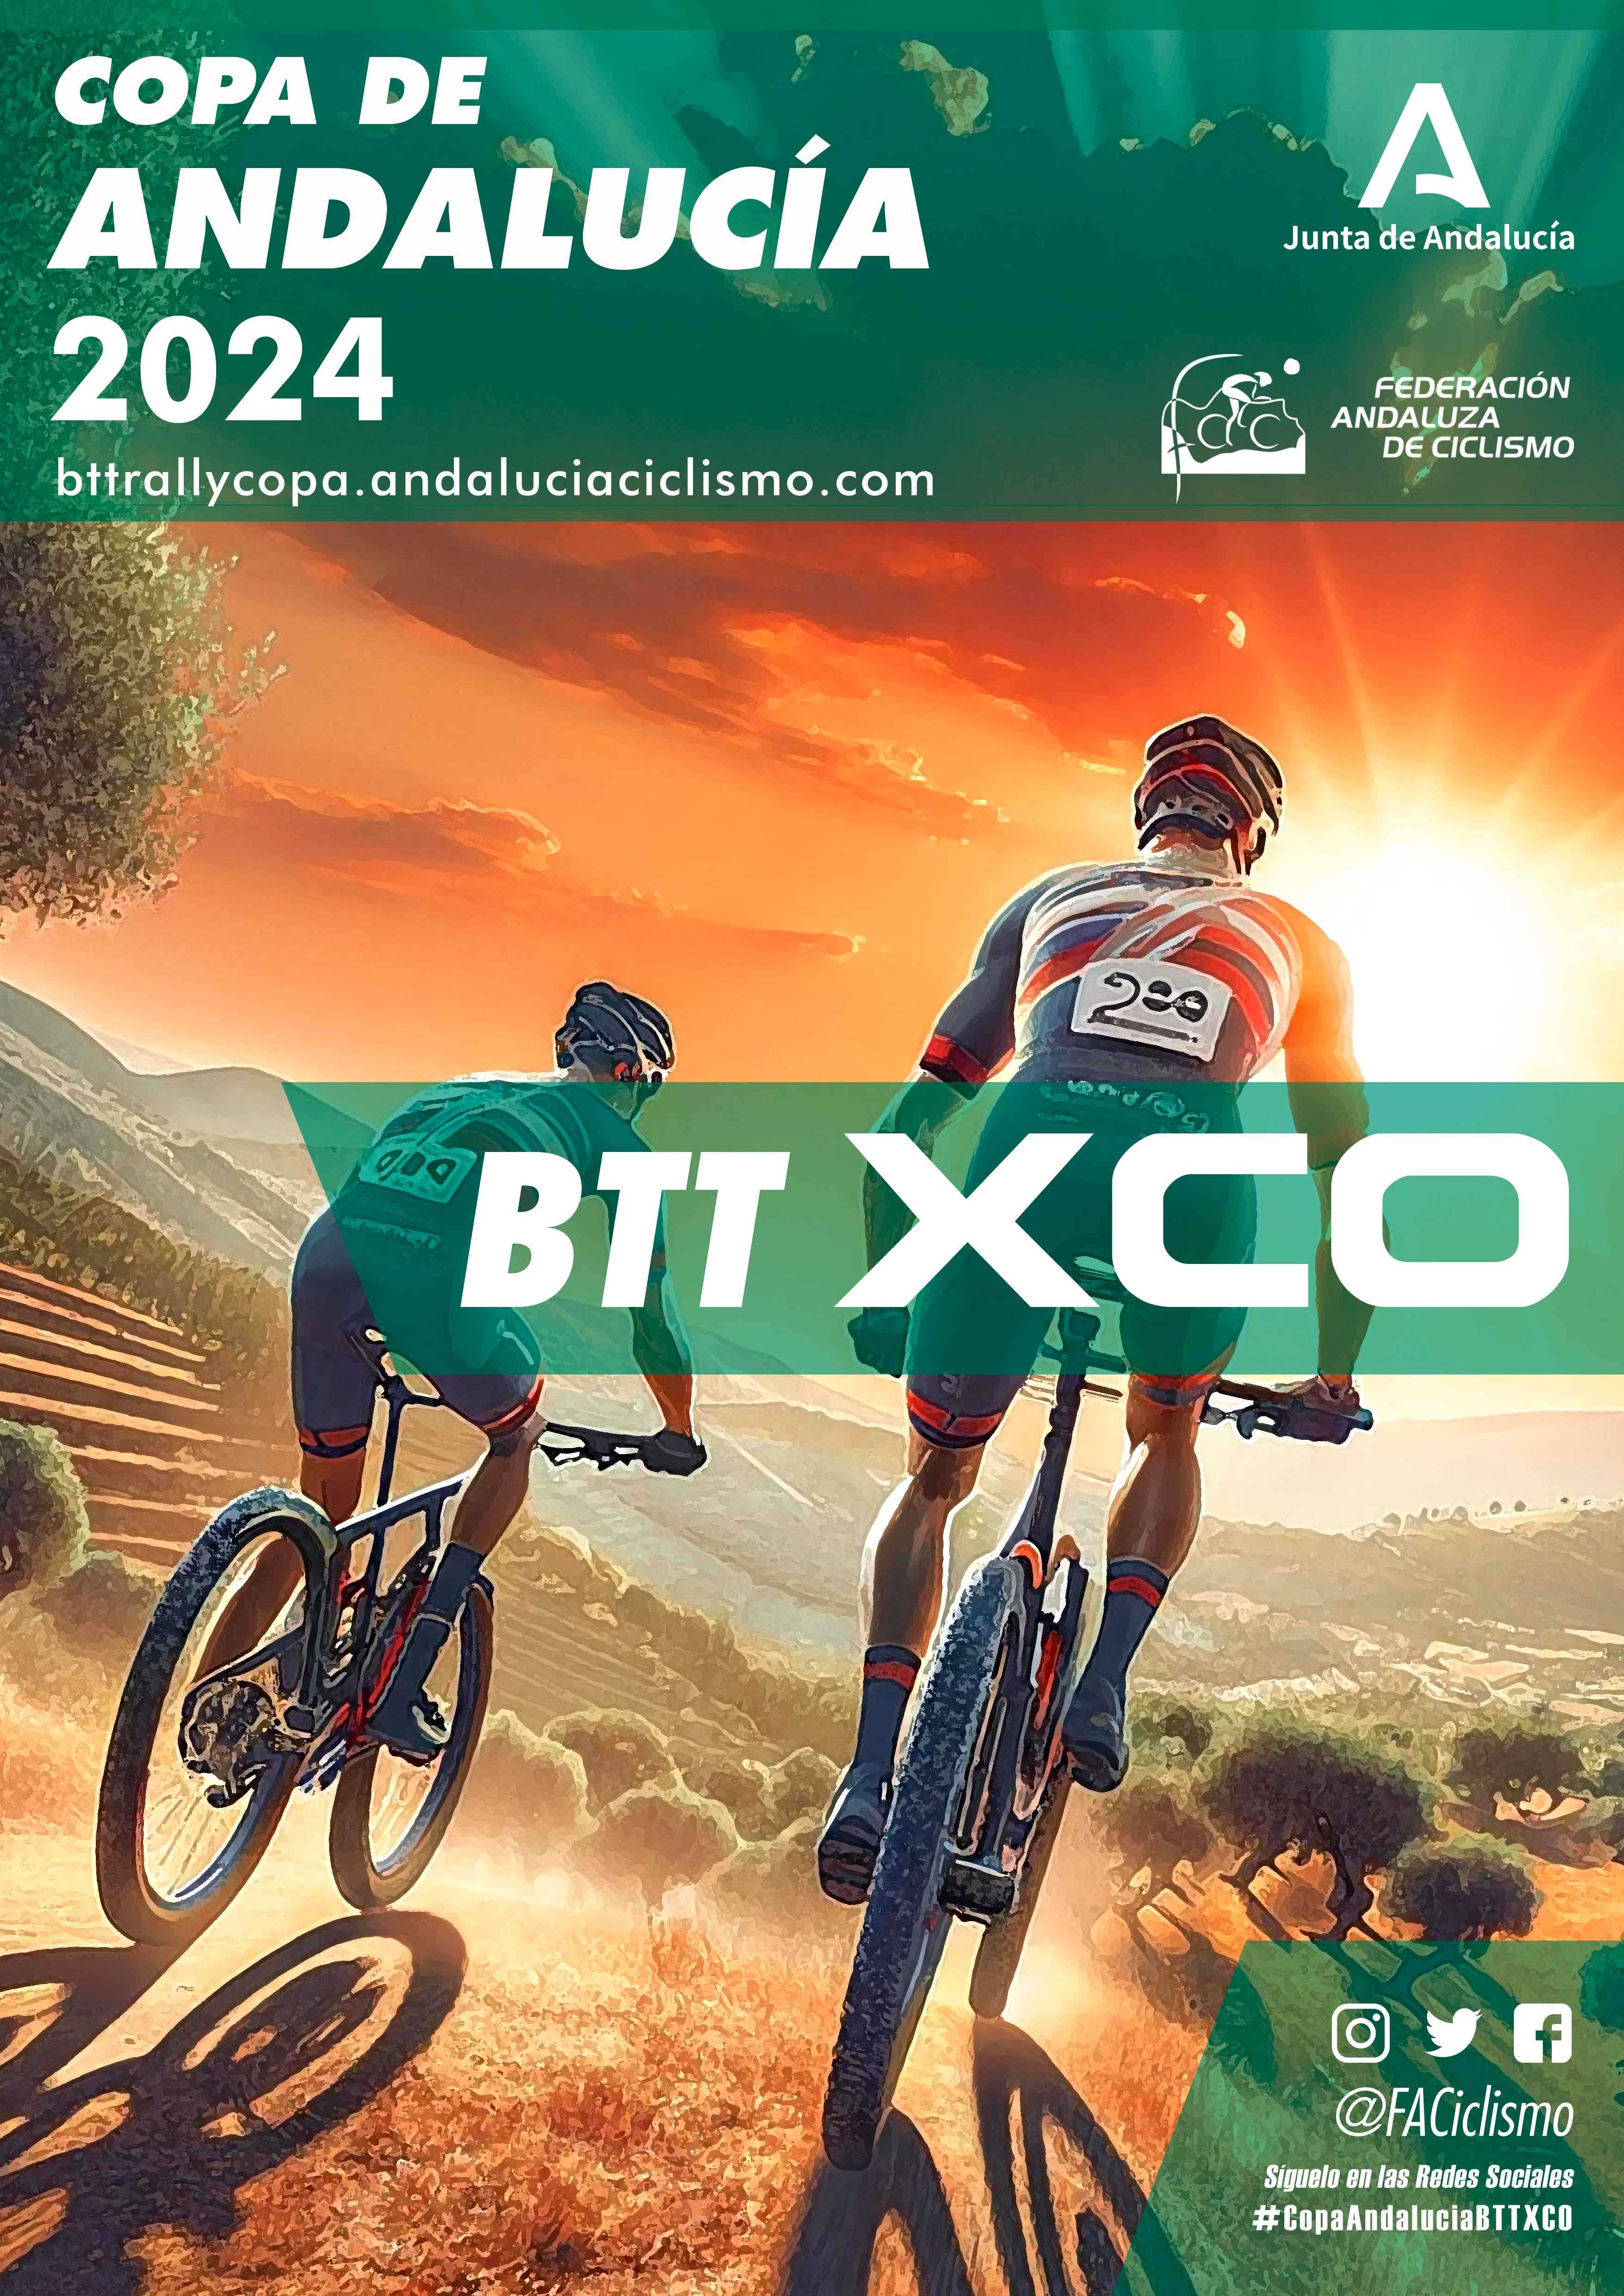 Los Pinares de Cartaya abren la fase decisiva de la Copa Andalucía BTT XCO 2024